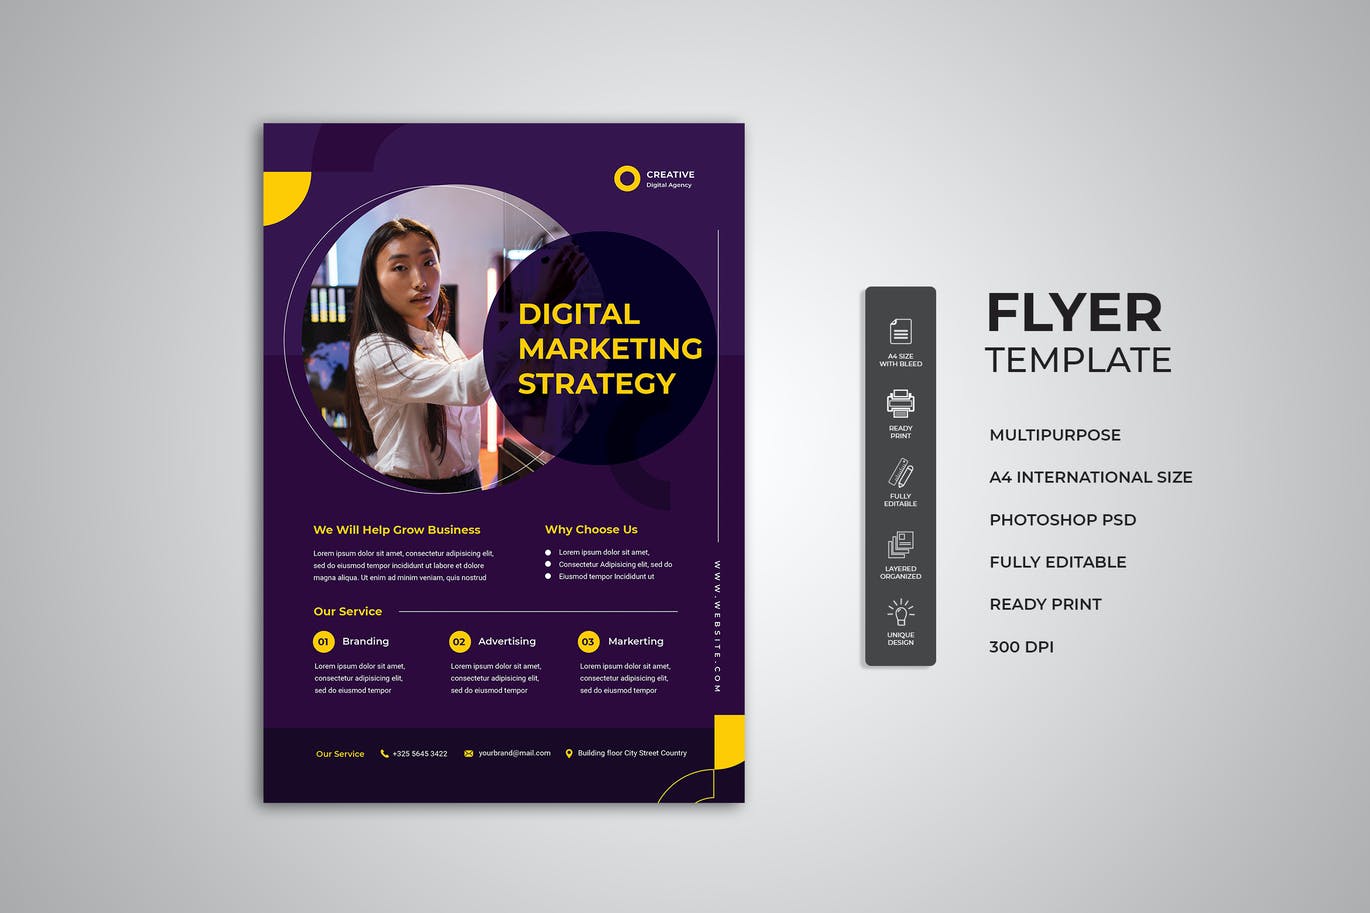 数字营销策略宣传单模板 Digital Marketing Strategy Flyer 设计素材 第1张